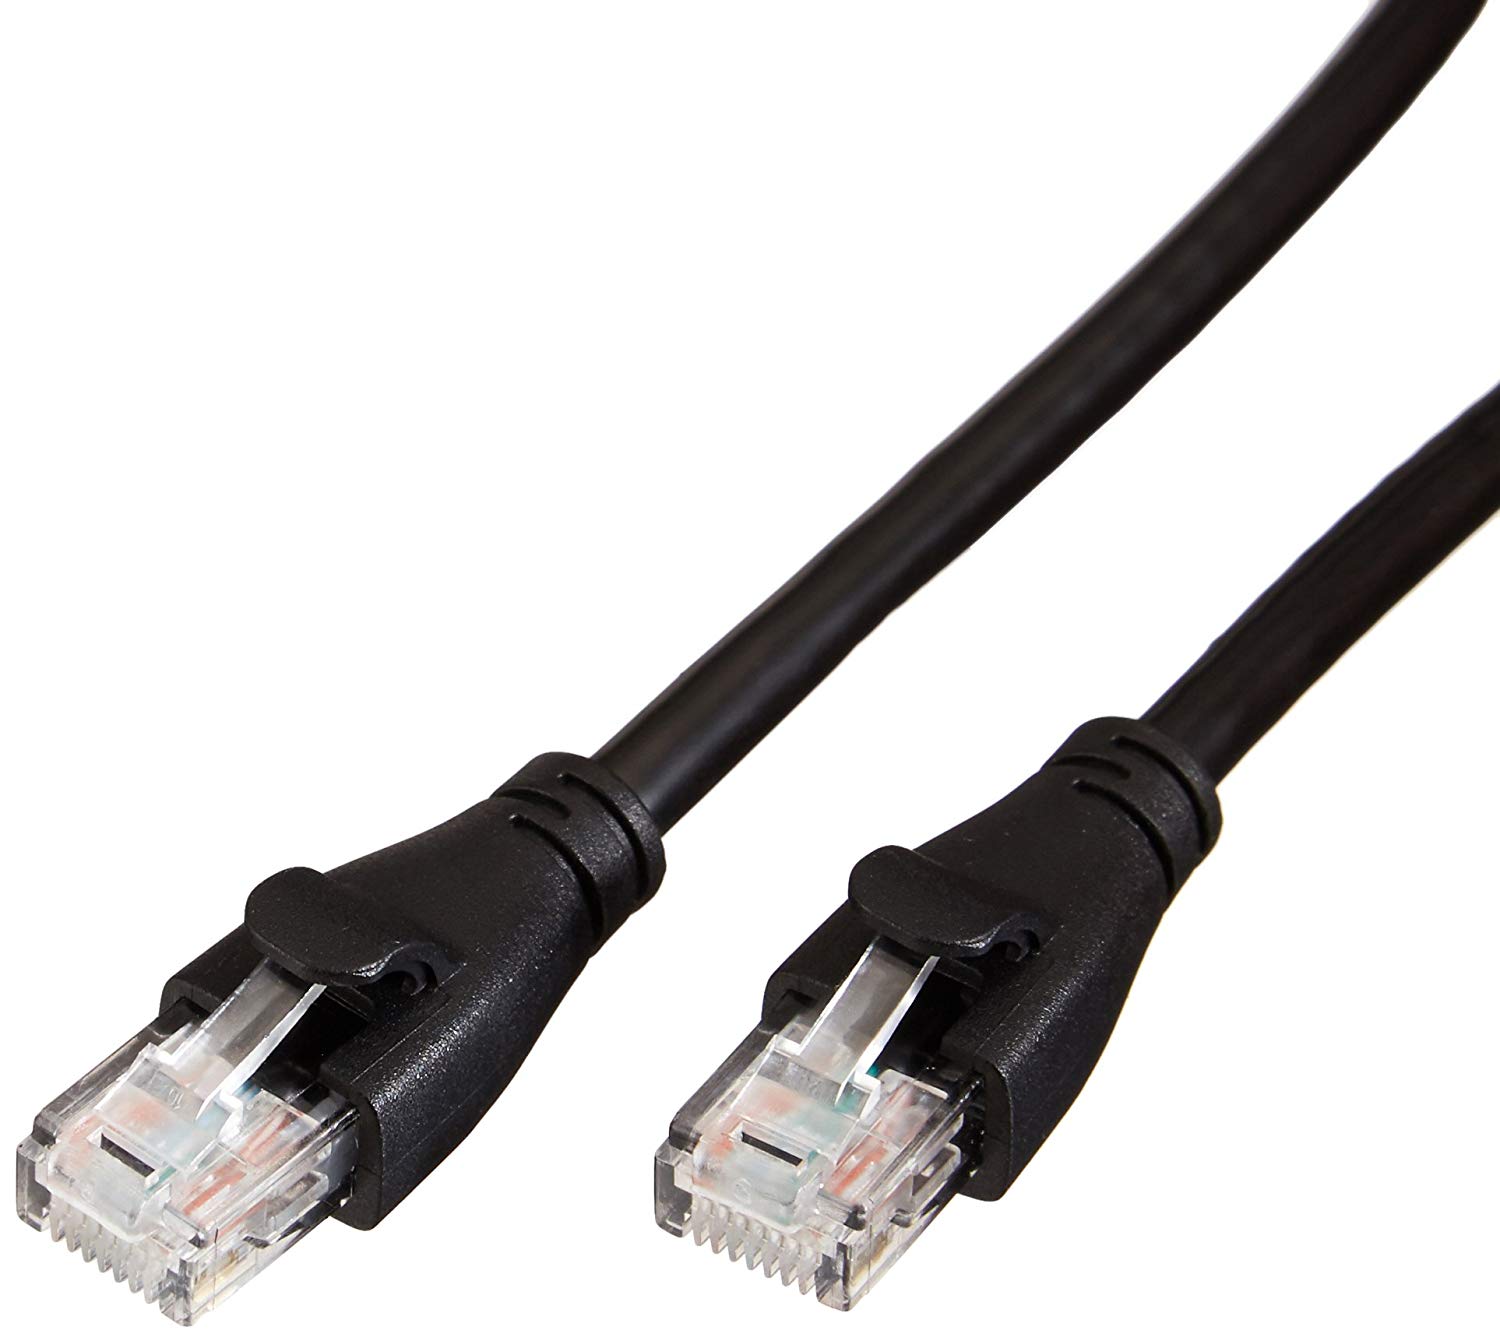 Amazon Basics Cat 6 Ethernet cable